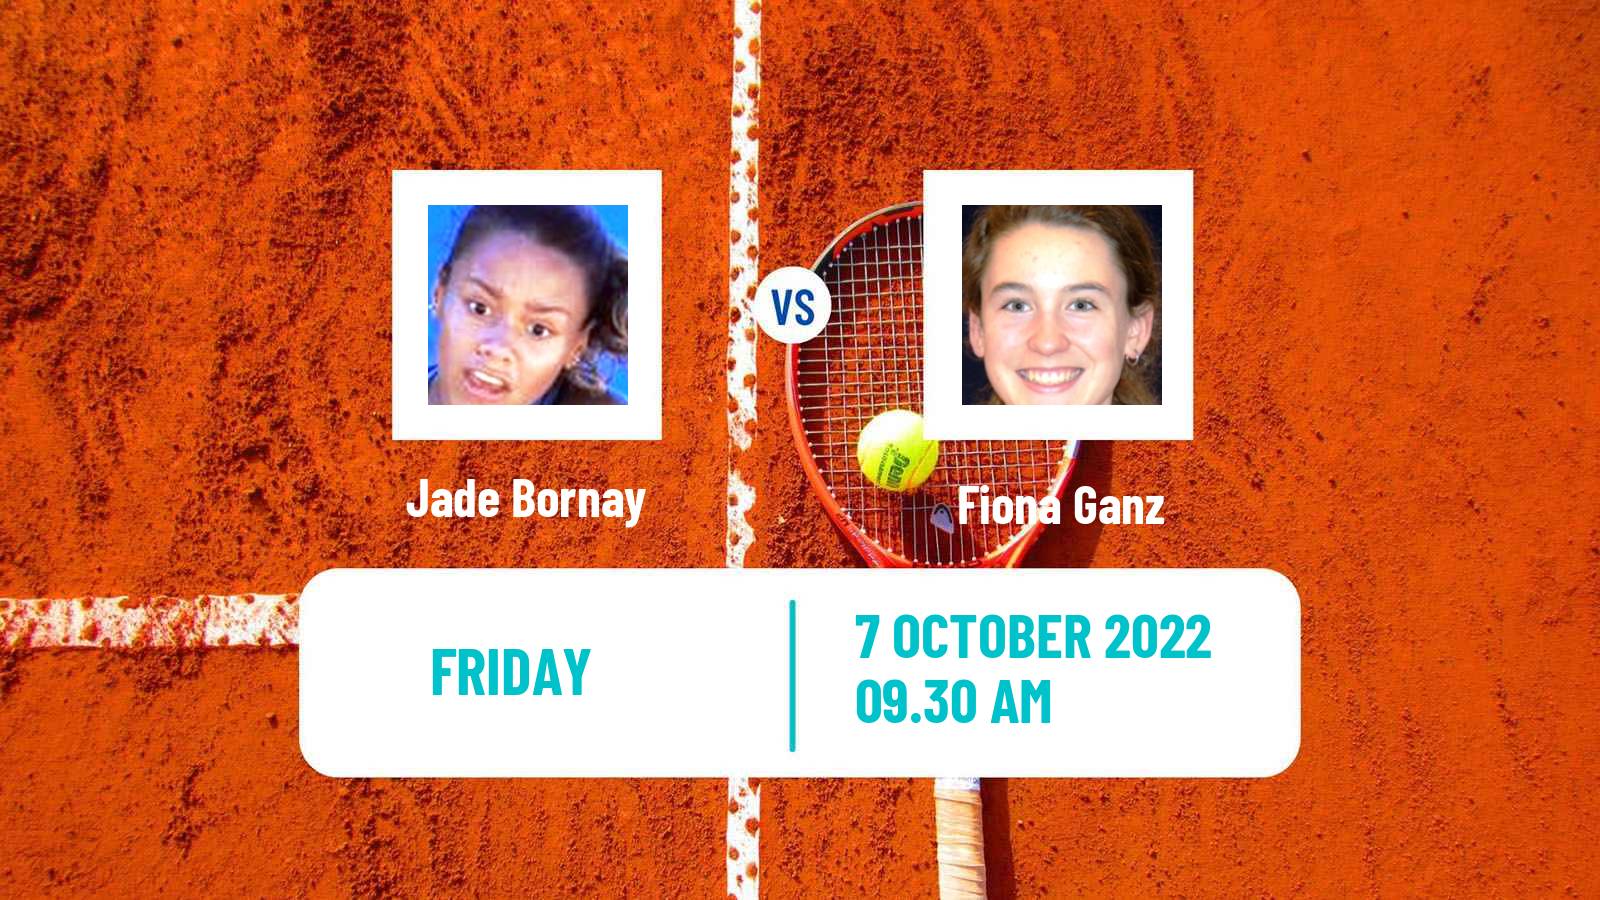 Tennis ITF Tournaments Jade Bornay - Fiona Ganz